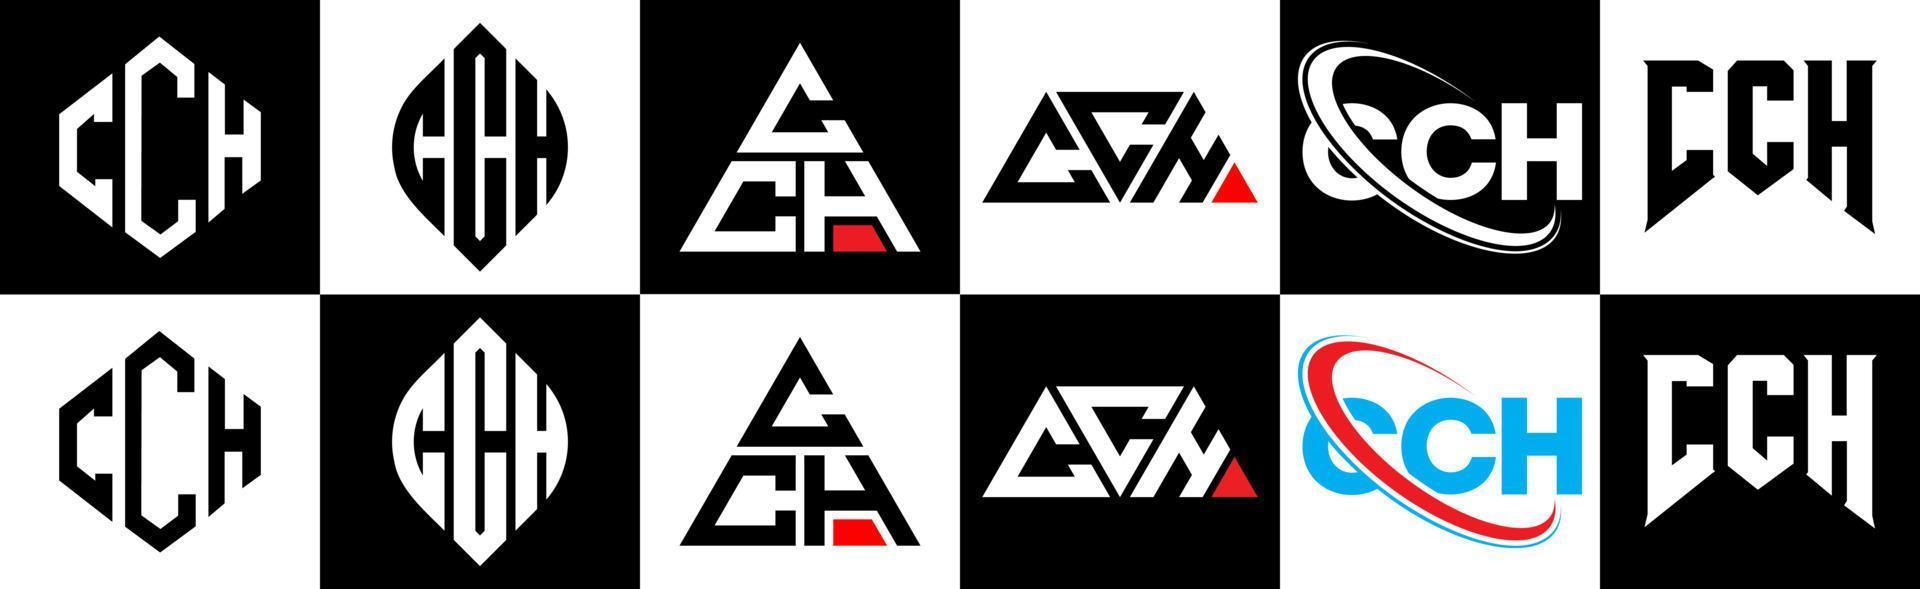 cch brief logo ontwerp in zes stijl. cch veelhoek, cirkel, driehoek, zeshoek, vlak en gemakkelijk stijl met zwart en wit kleur variatie brief logo reeks in een tekengebied. cch minimalistische en klassiek logo vector